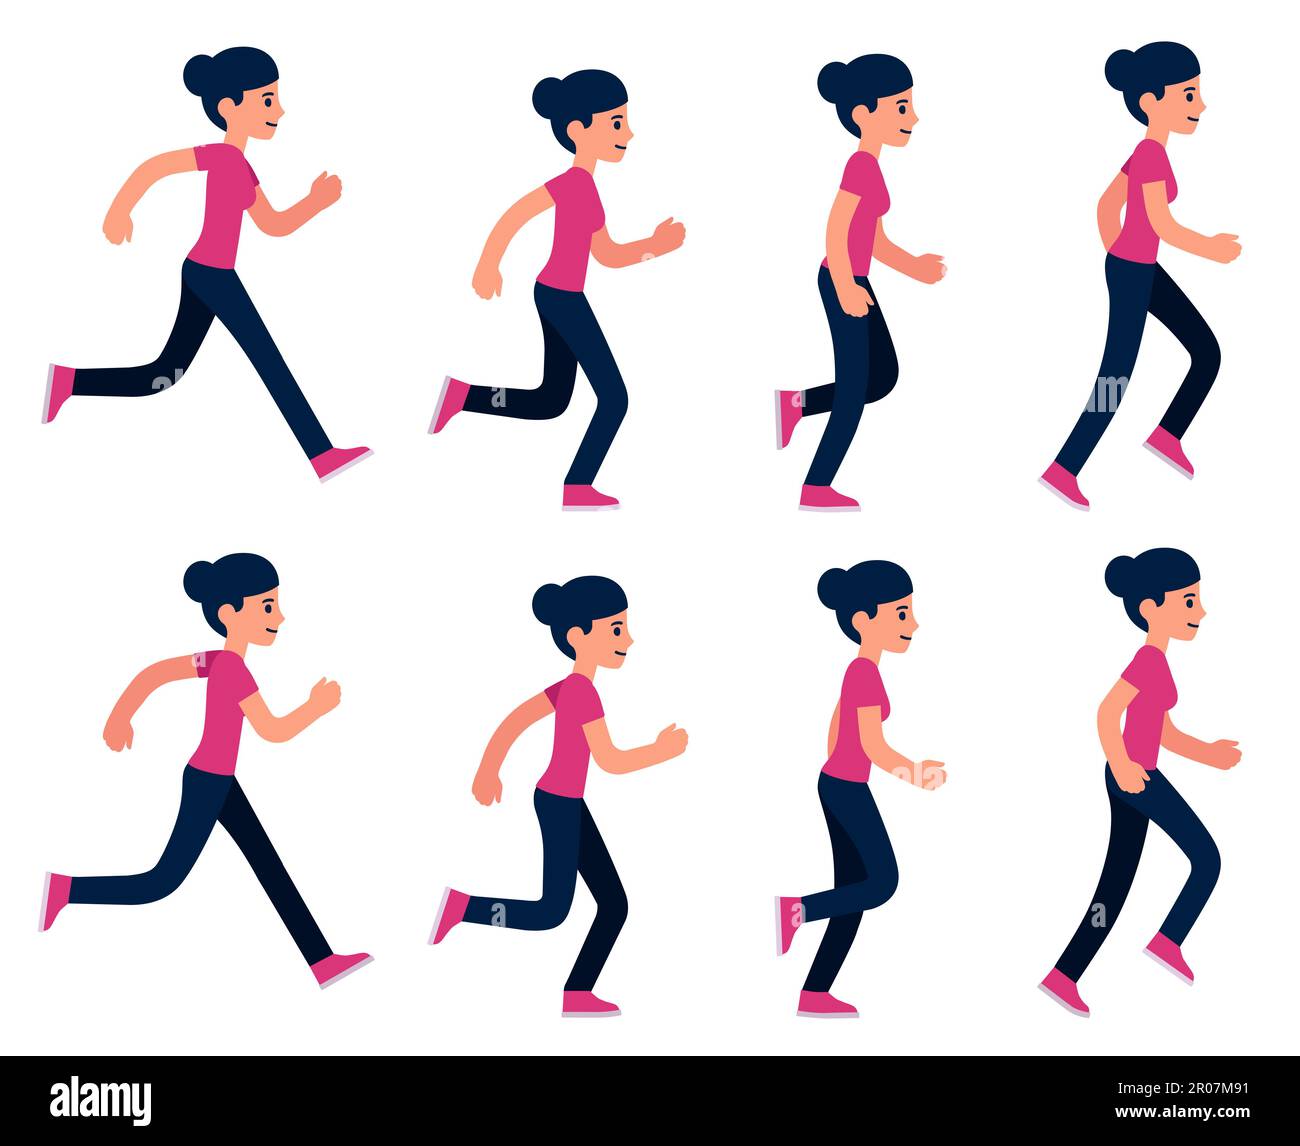 Jeu de sprite d'animation pour femme de course à pied, boucle de 8 images. Illustration vectorielle simple de style dessin animé. Illustration de Vecteur